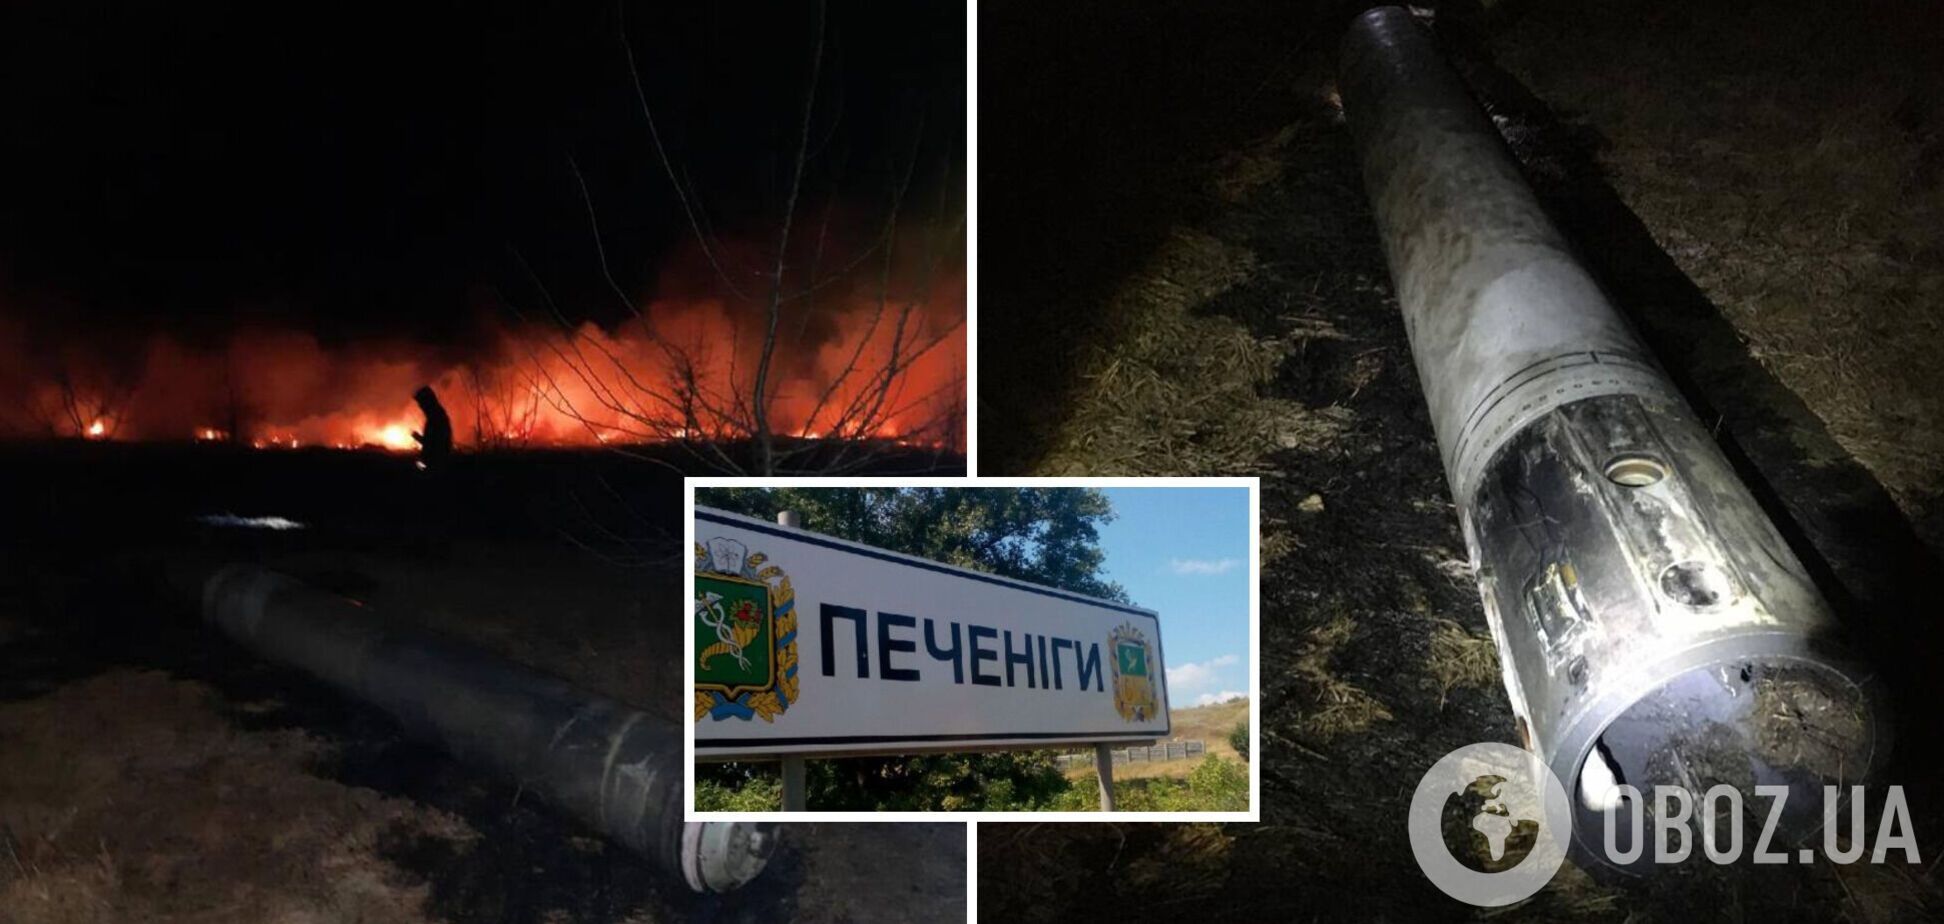 Оккупанты обстреляли Печенеги на Харьковщине, на месте прилета ракет начался пожар. Фото